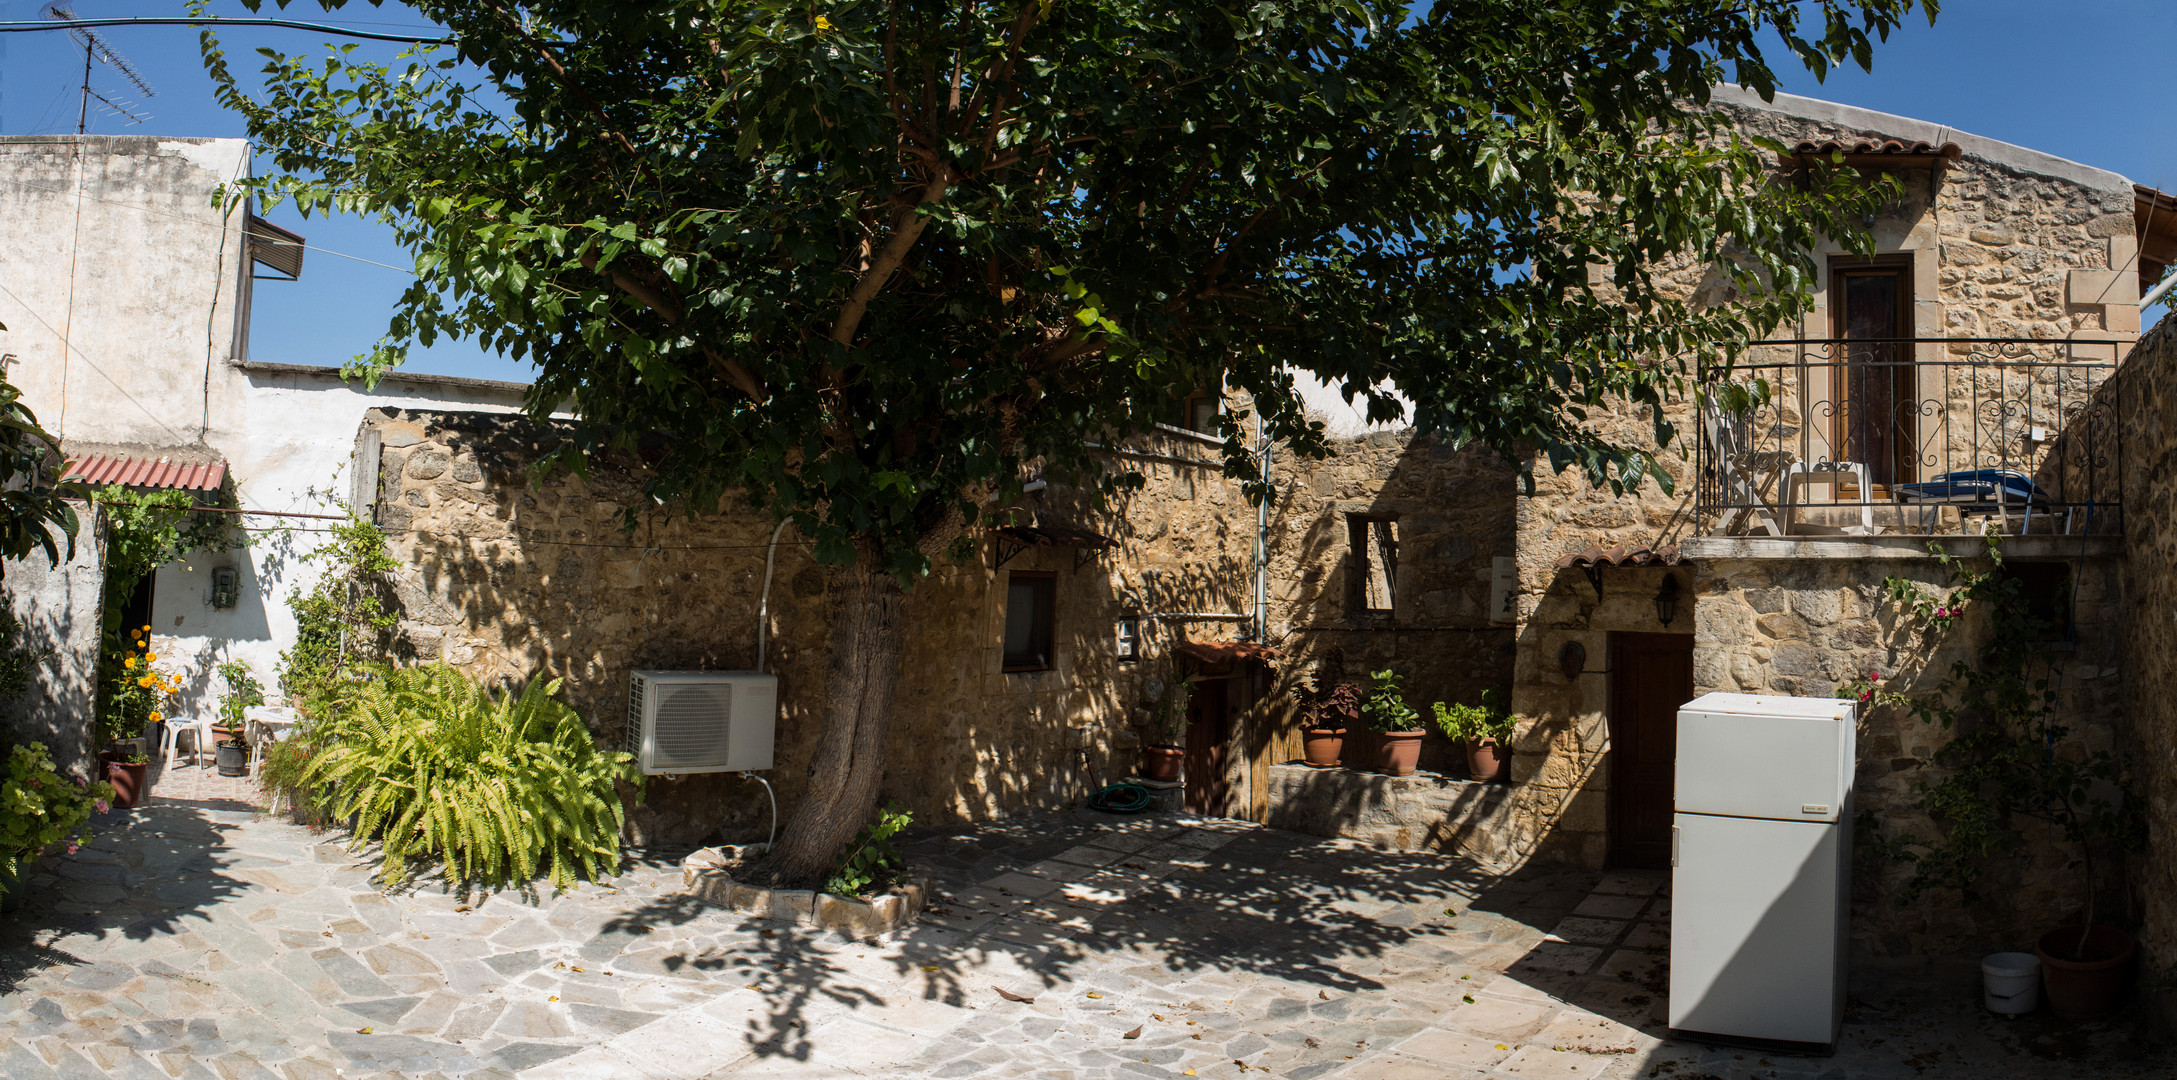 Typischer Innenhof eines dörflichen Wohnhauses auf Kreta